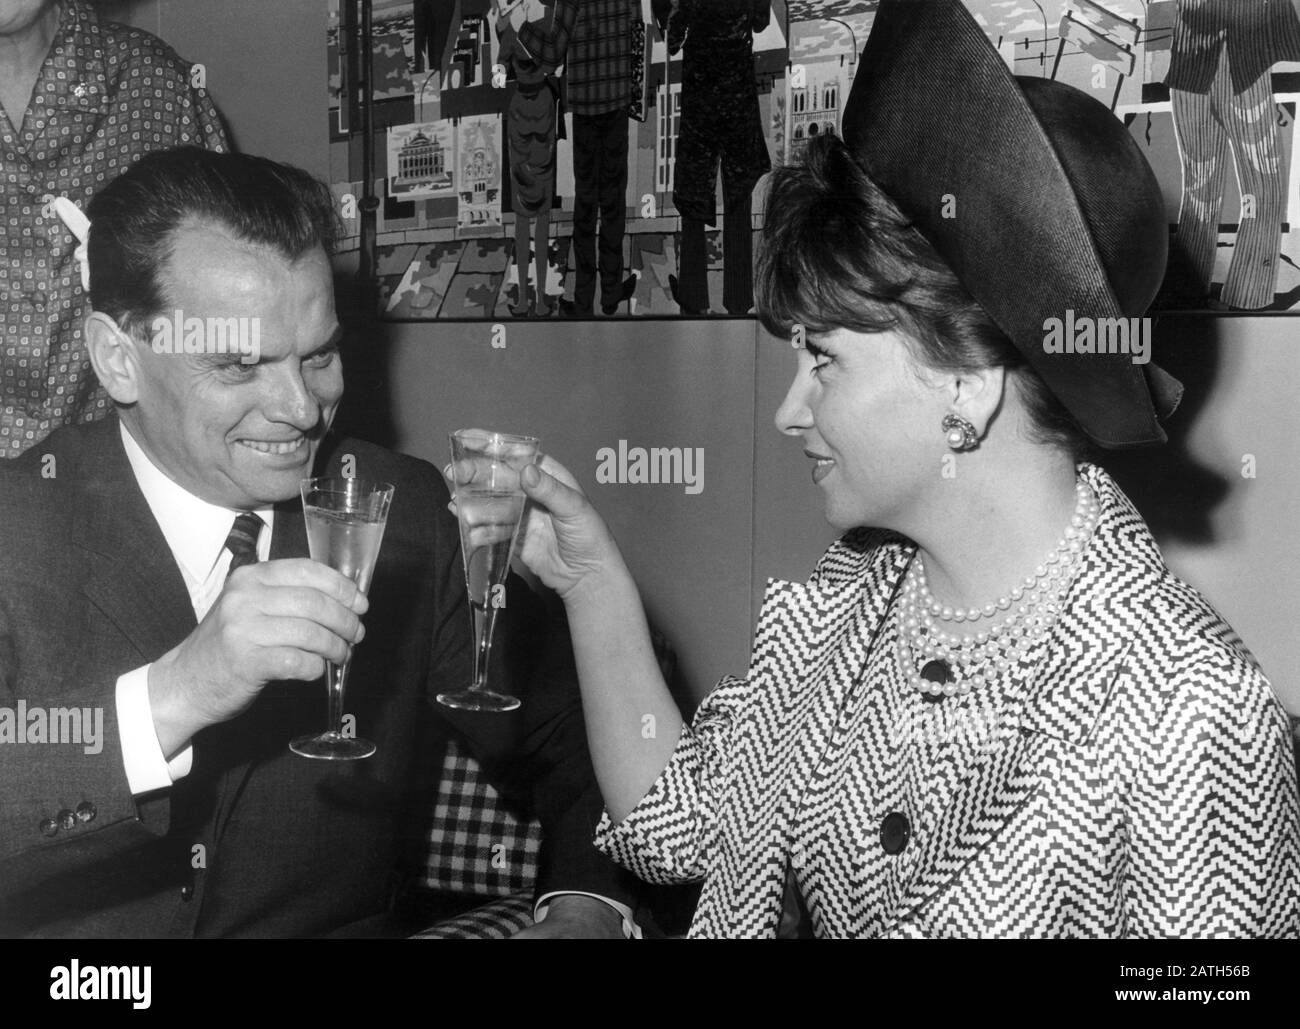 Il direttore del Festival Afred Bauer saluta l'attrice italiana Gina Lollobrigida dopo il suo arrivo all'aeroporto Tegel di Berlino il 2nd luglio 1965 con un bicchiere di spumante. | utilizzo in tutto il mondo Foto Stock